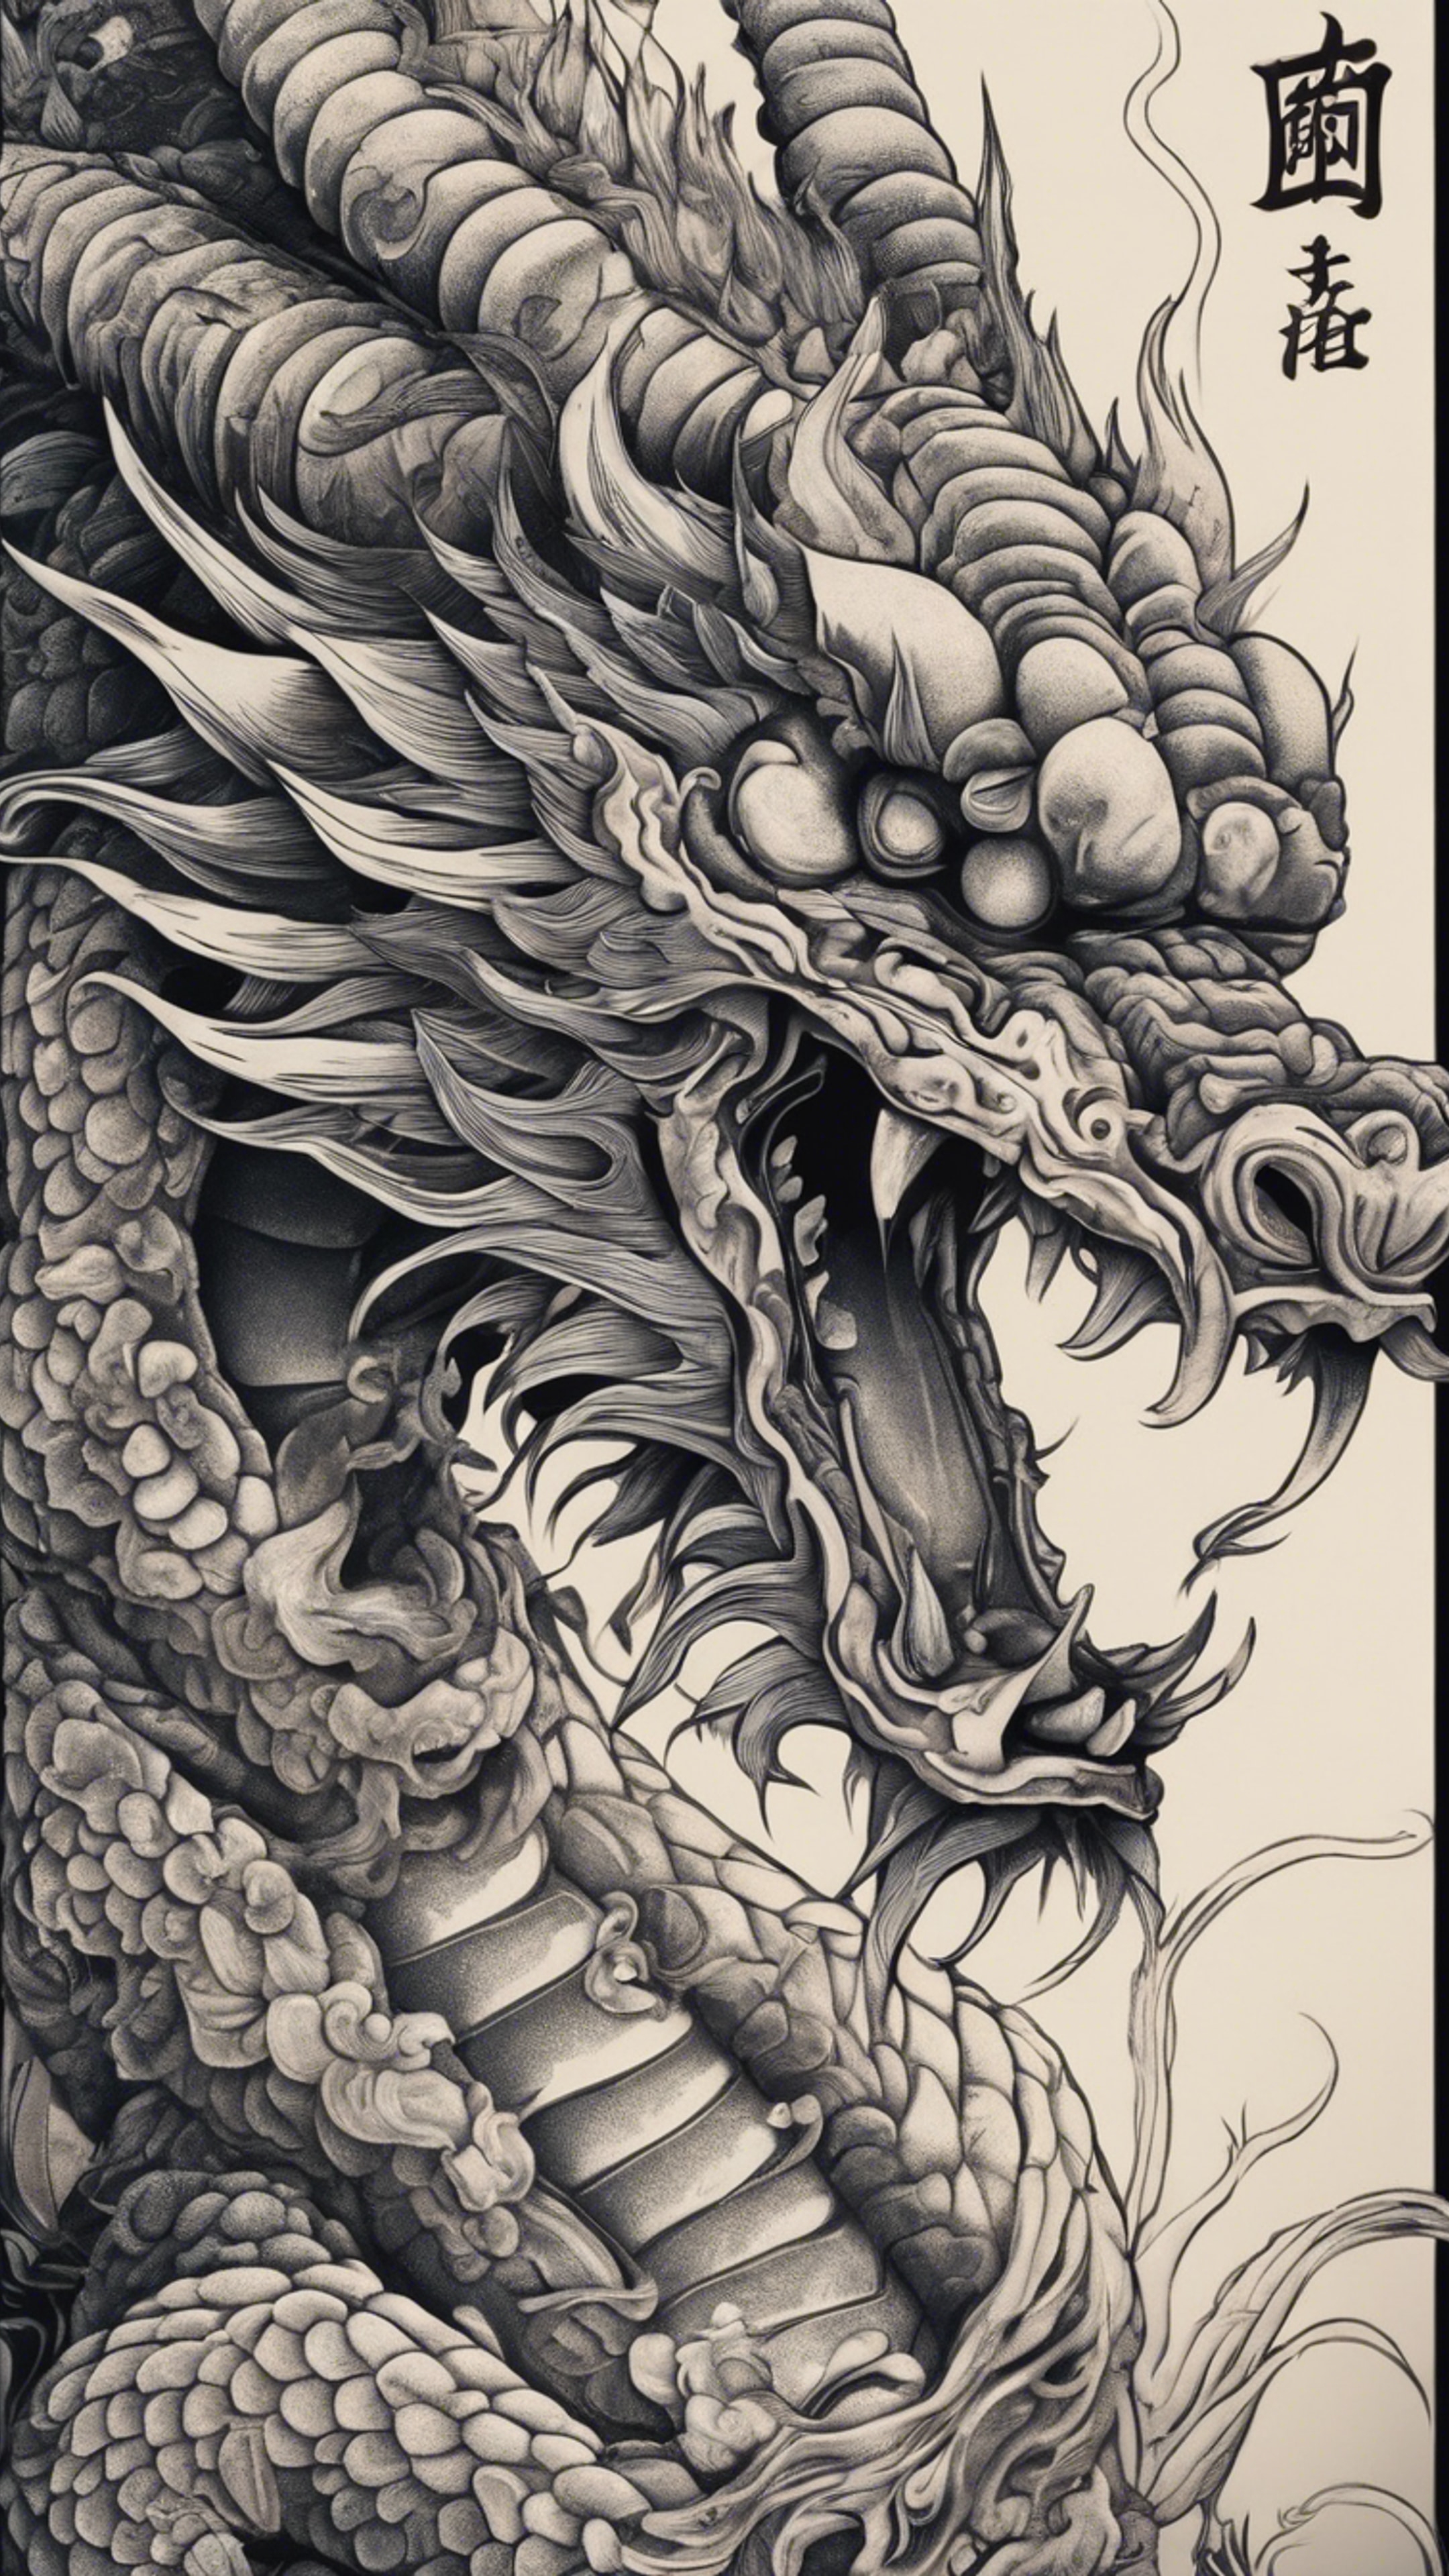 A Japanese dragon tattoo design with intricate details. Taustakuva[fa4ff1f2e6c24a2f94e4]